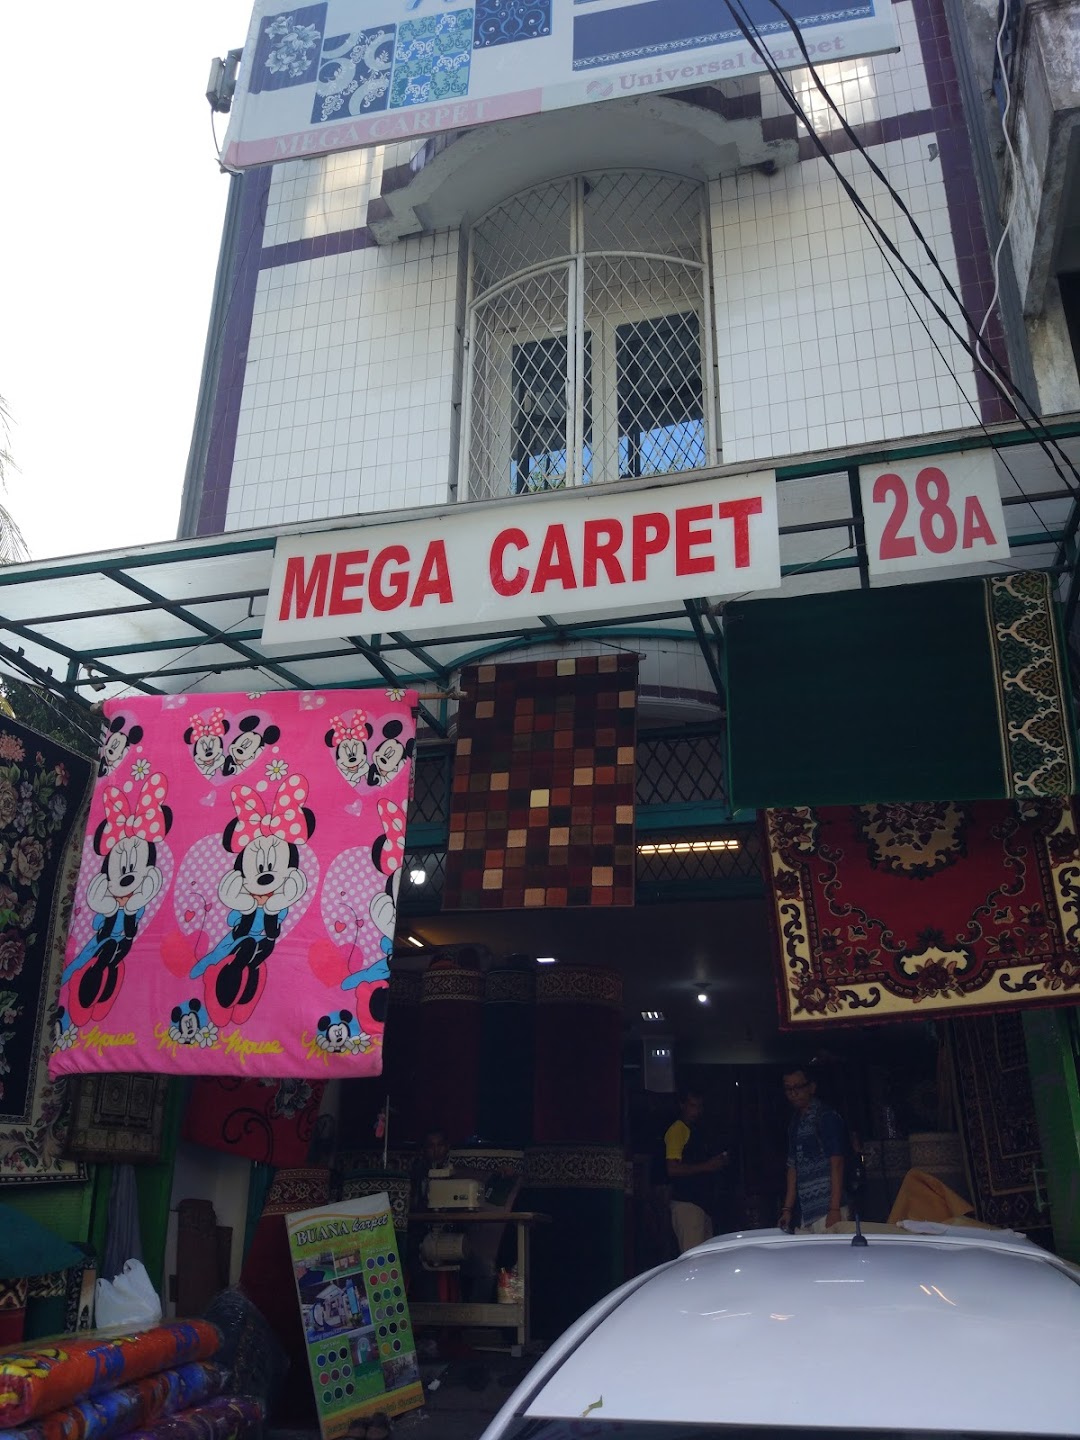 Mega Carpet